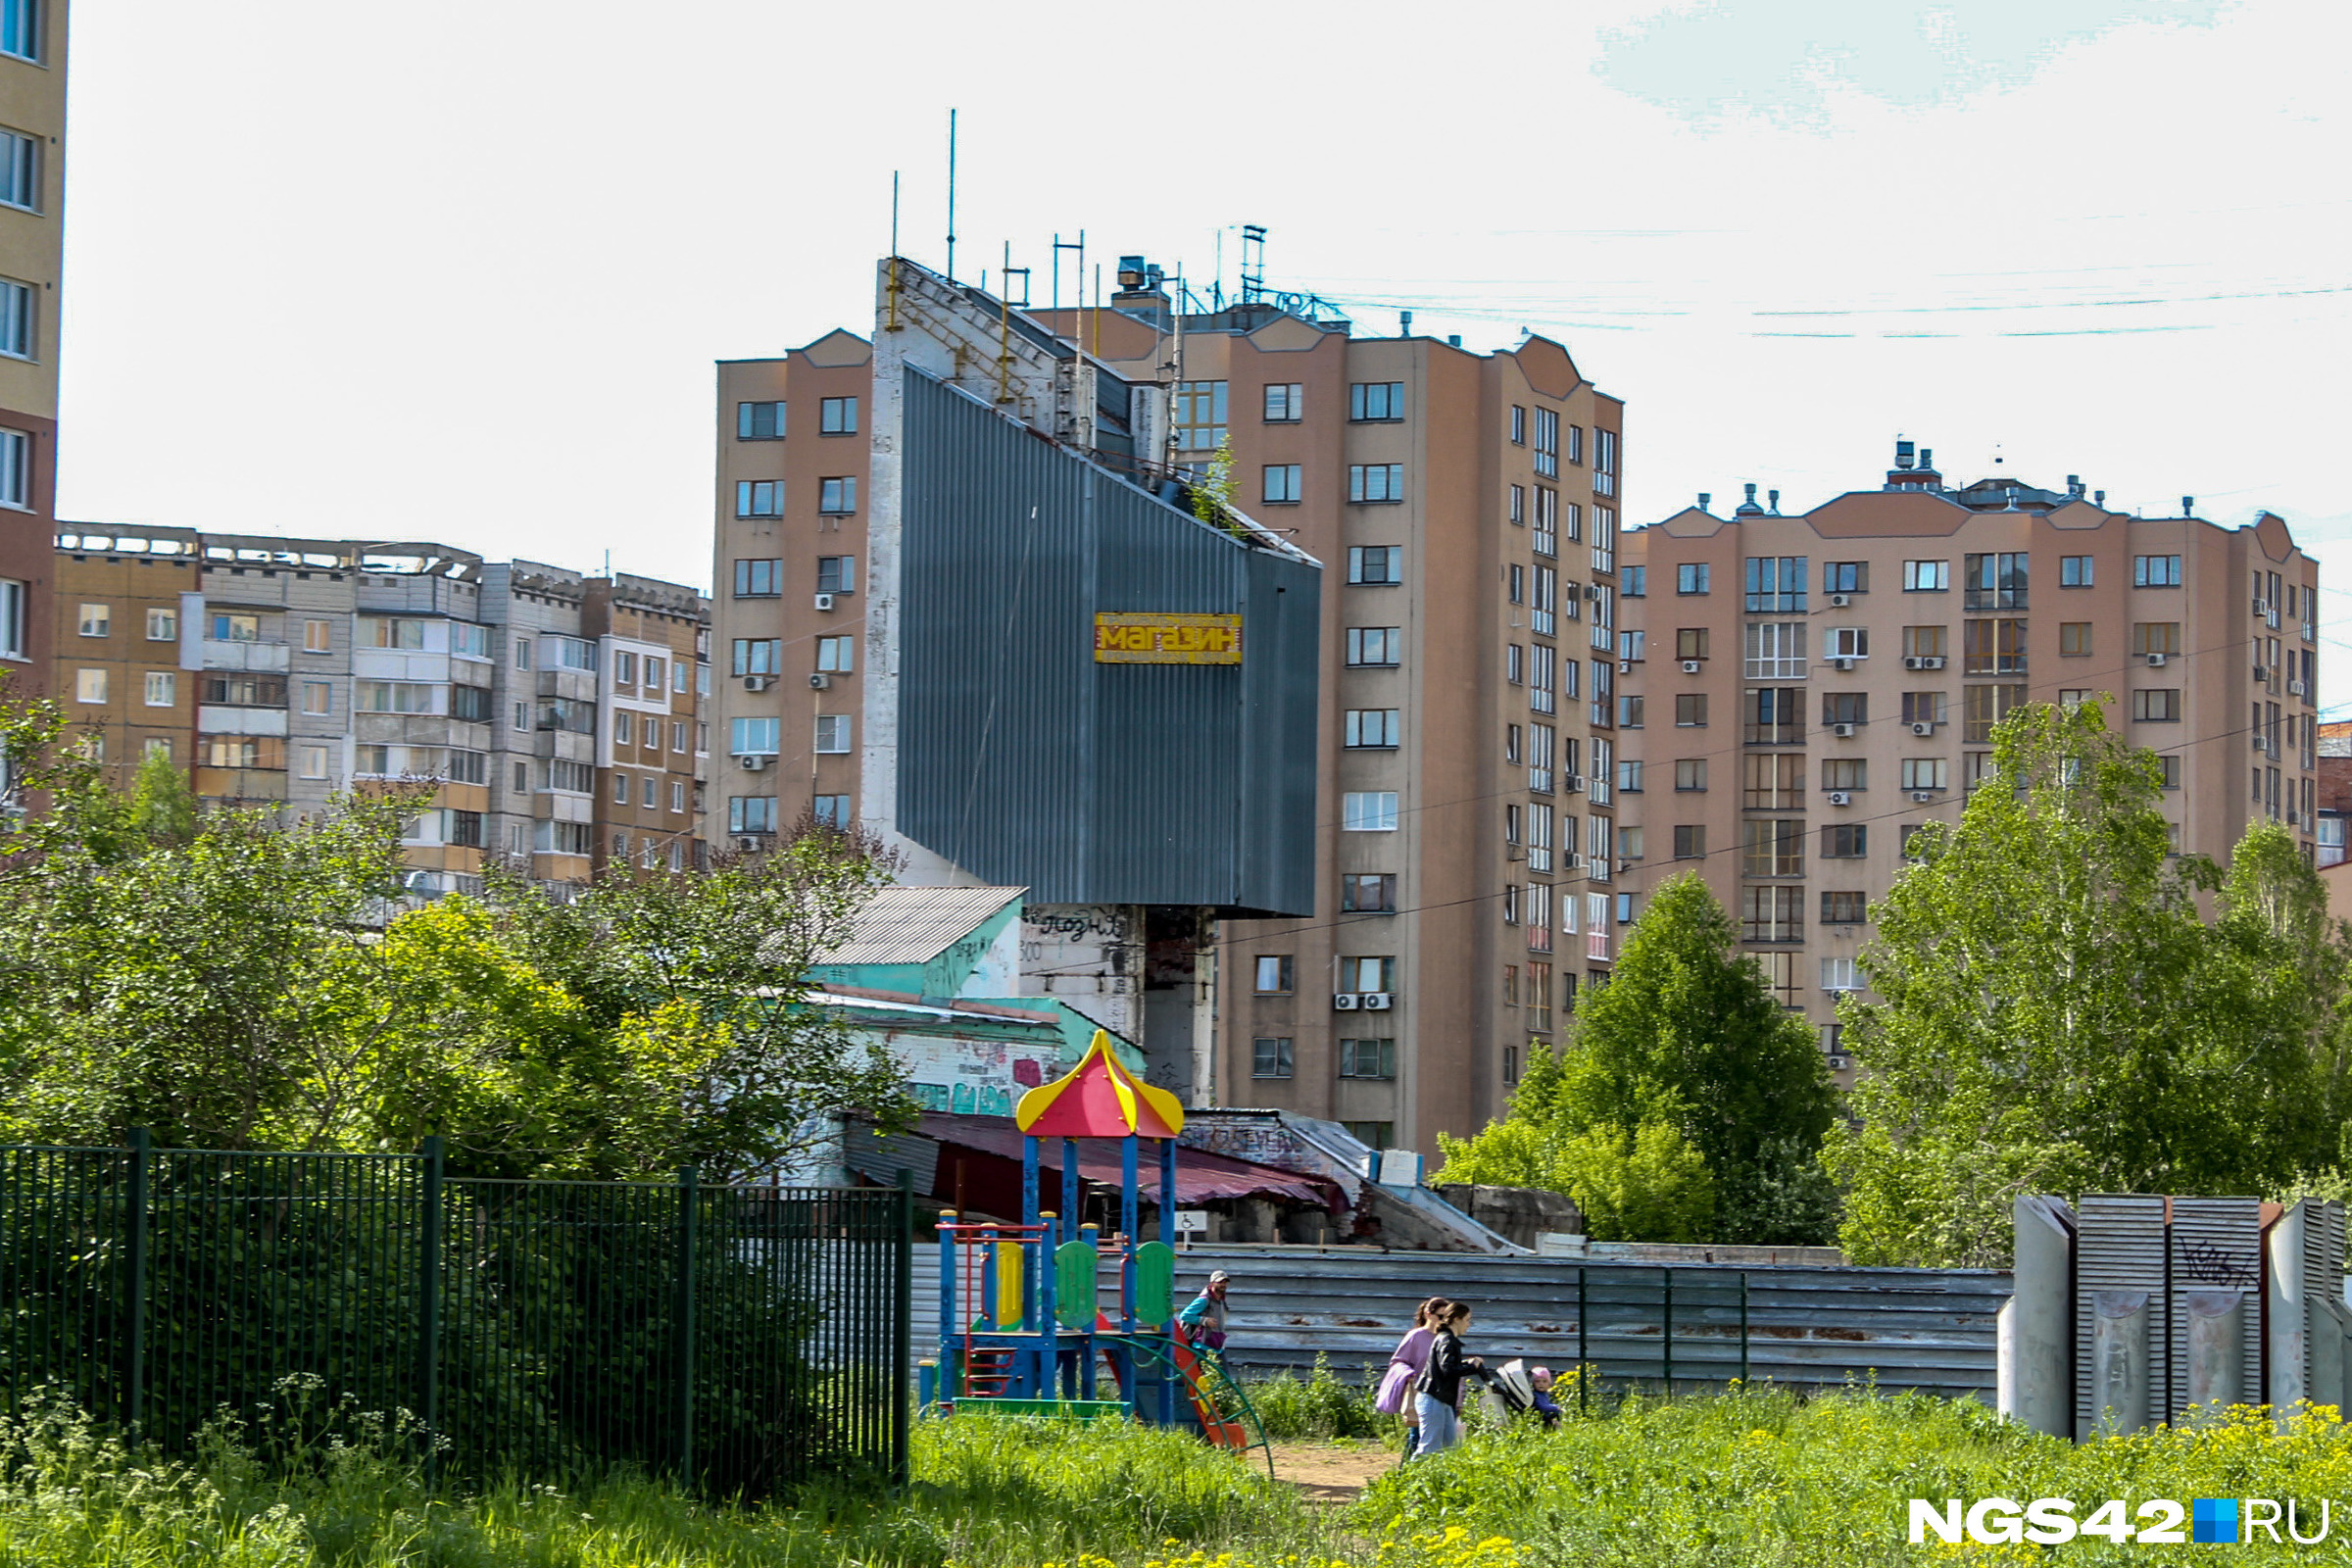 «Сто лет стоит и никому не мешает»: как выглядят незаконные постройки в Кемерове и почему их не сносят